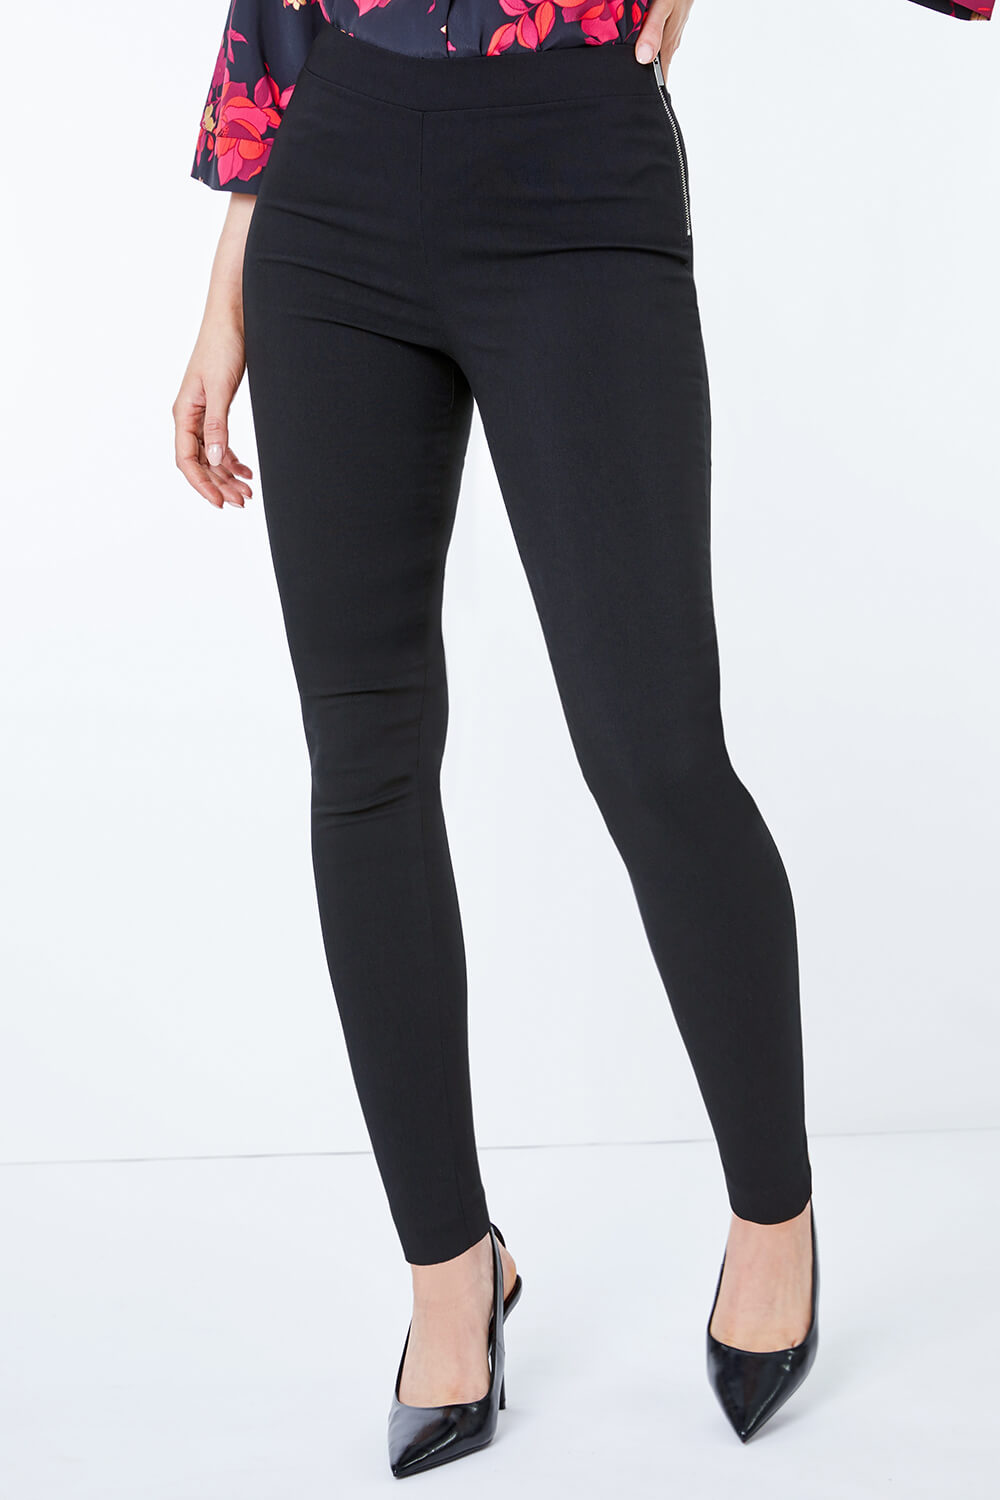 Pendelton Women's Trousers Size 10 Black Virgin Wool Lined Side Zip High  Rise | Trousers women, Fashion, Pendelton